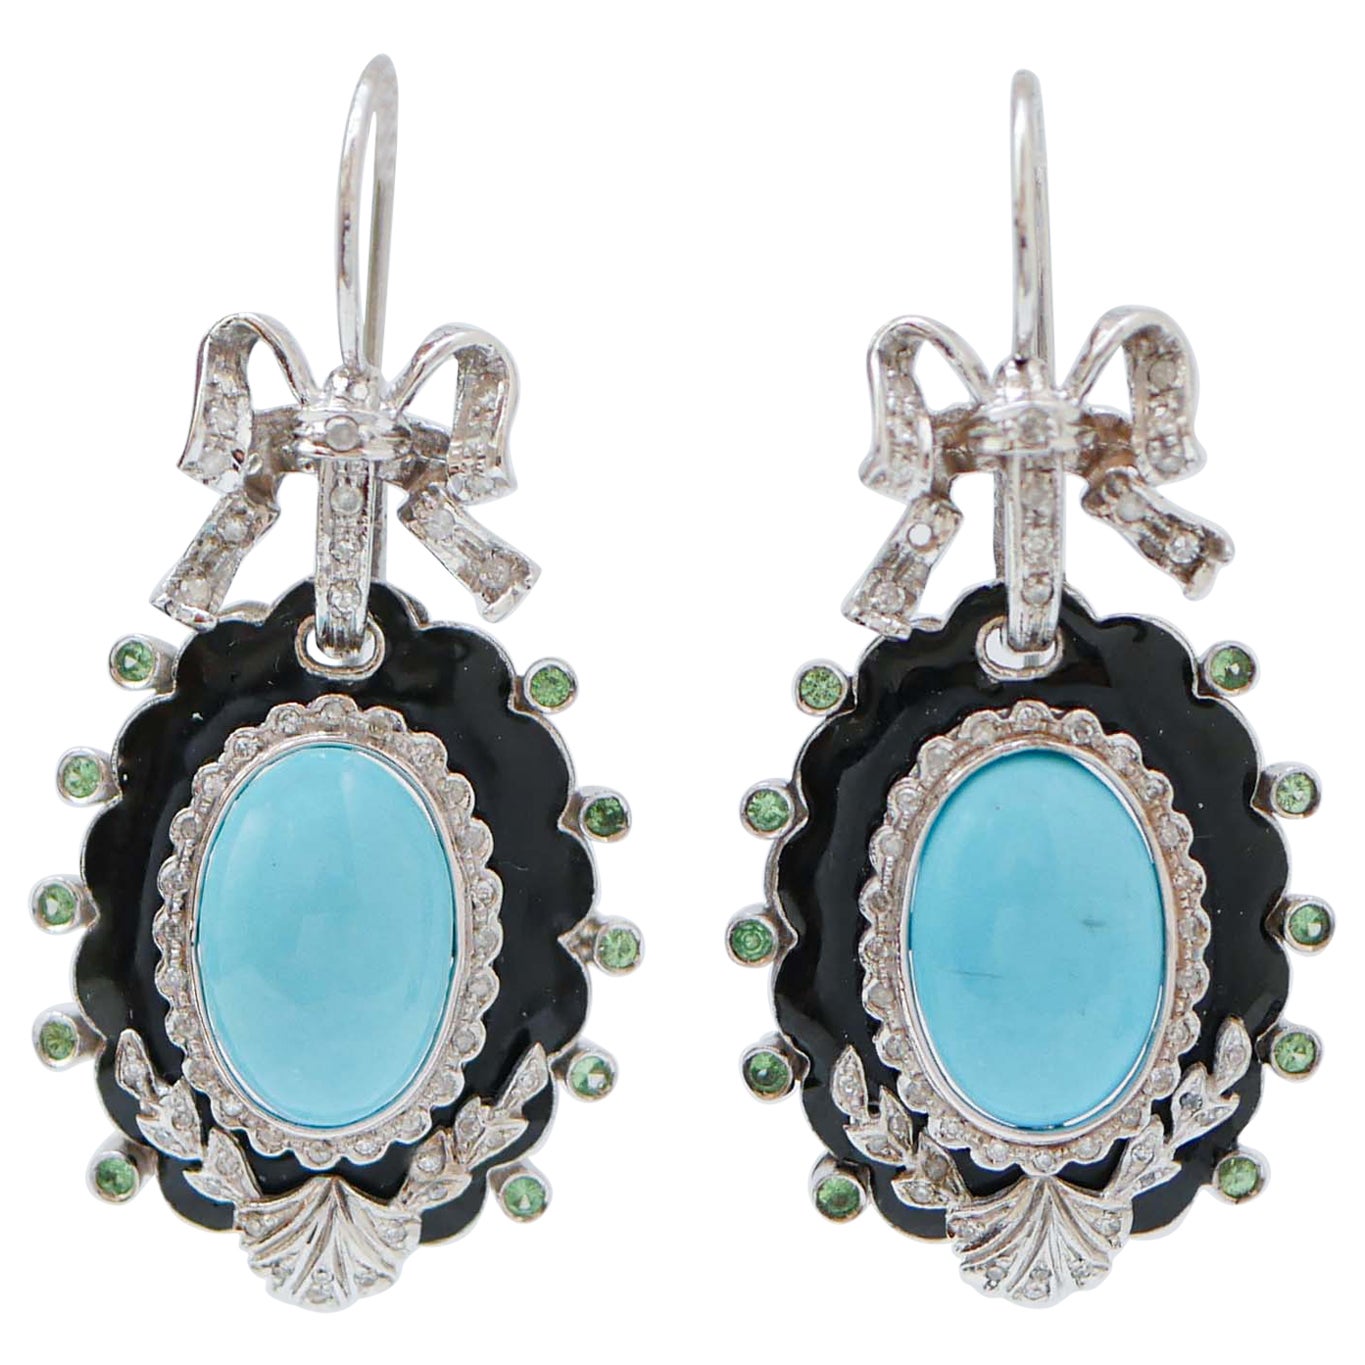 Turquoise, Tsavorites, Diamonds, Enamel, 14 Karat White Gold Dangle Earrings.